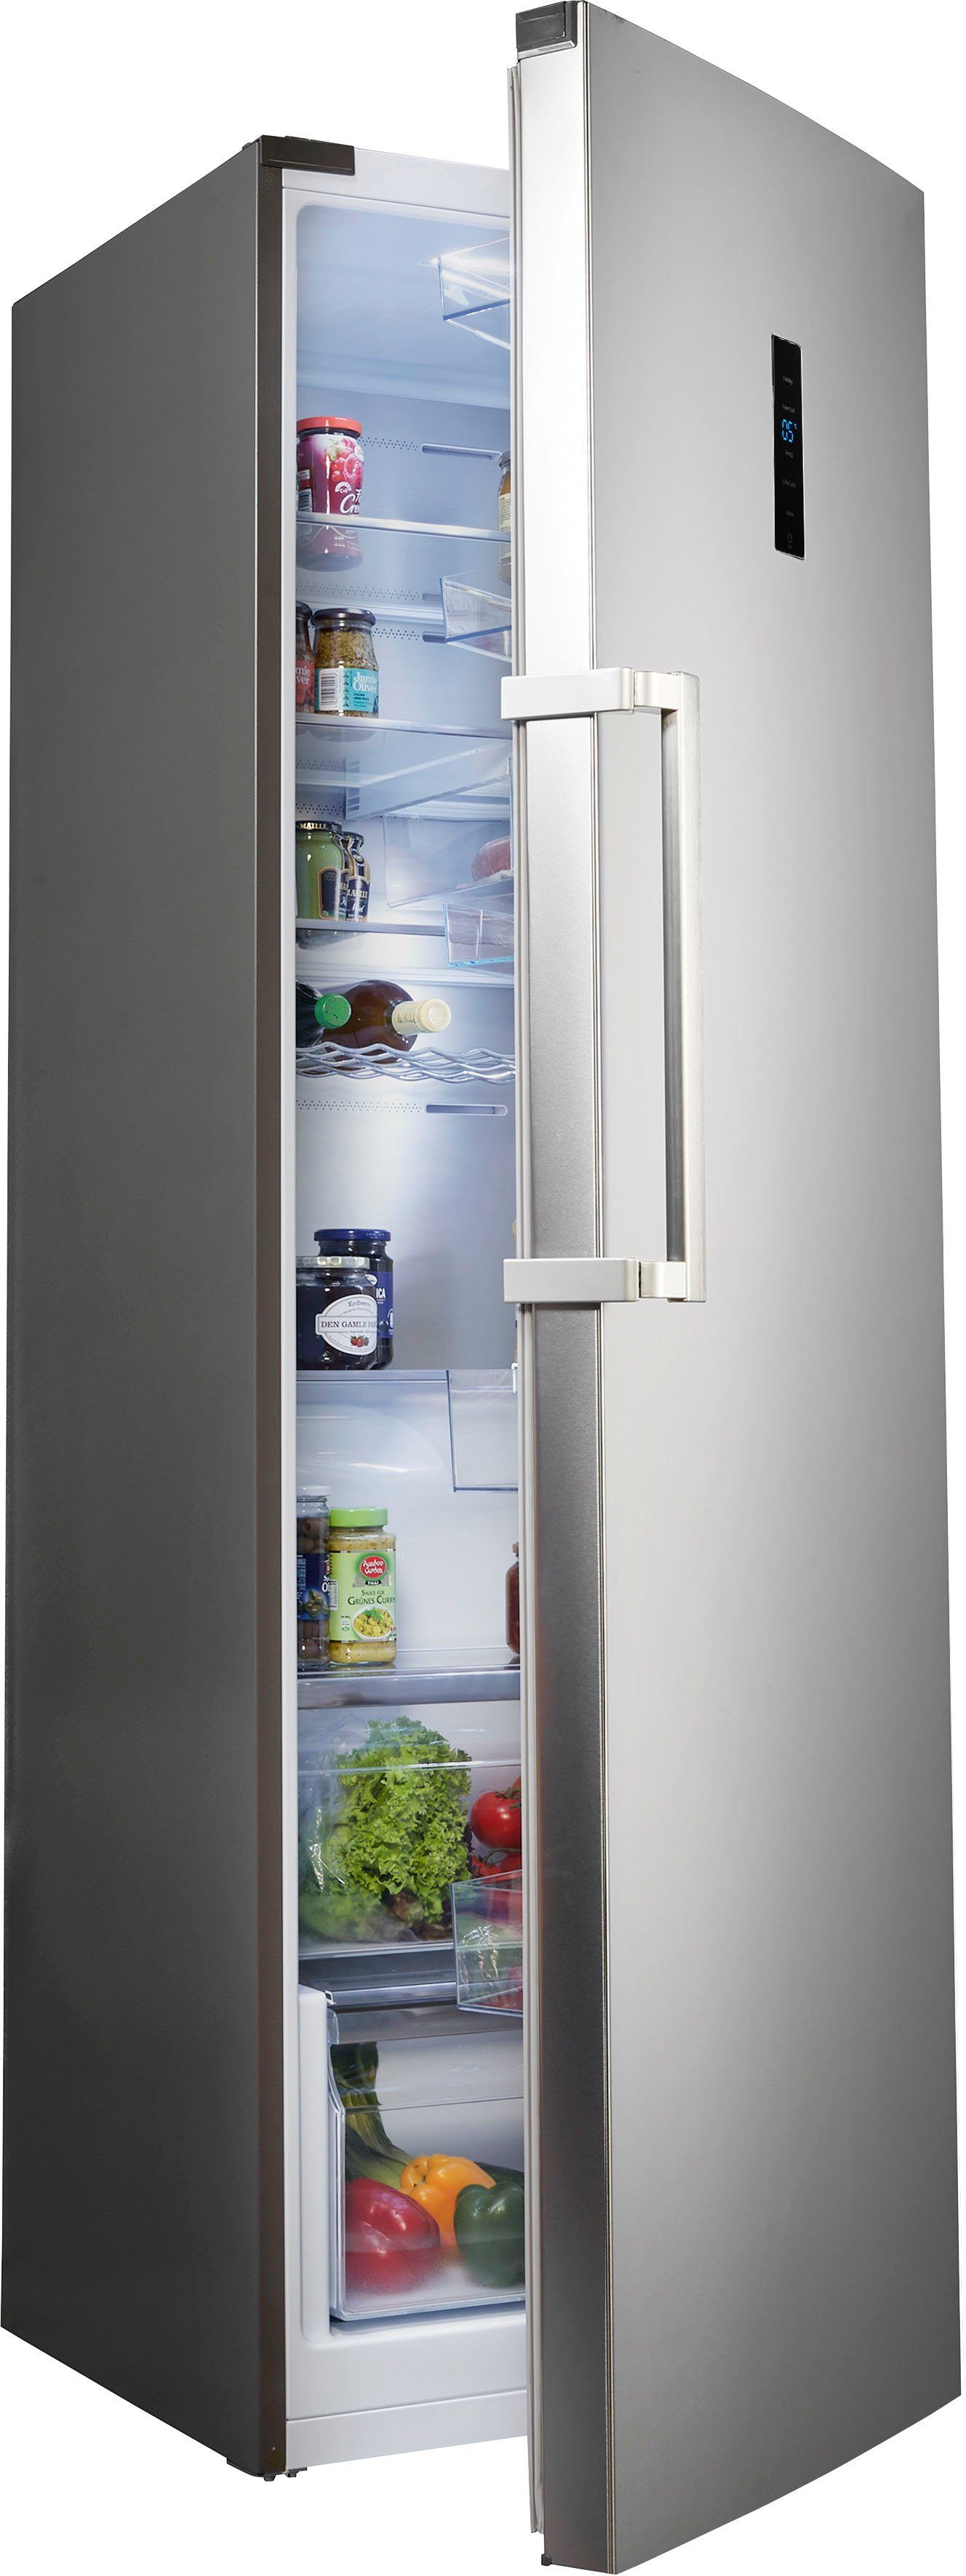 Hanseatic Kühlschrank HKS18560DEI, 185,5 cm hoch, 59,5 cm breit, NoFrost,  Schnellkühlfunktion, FreshZone, Display, Türalarm